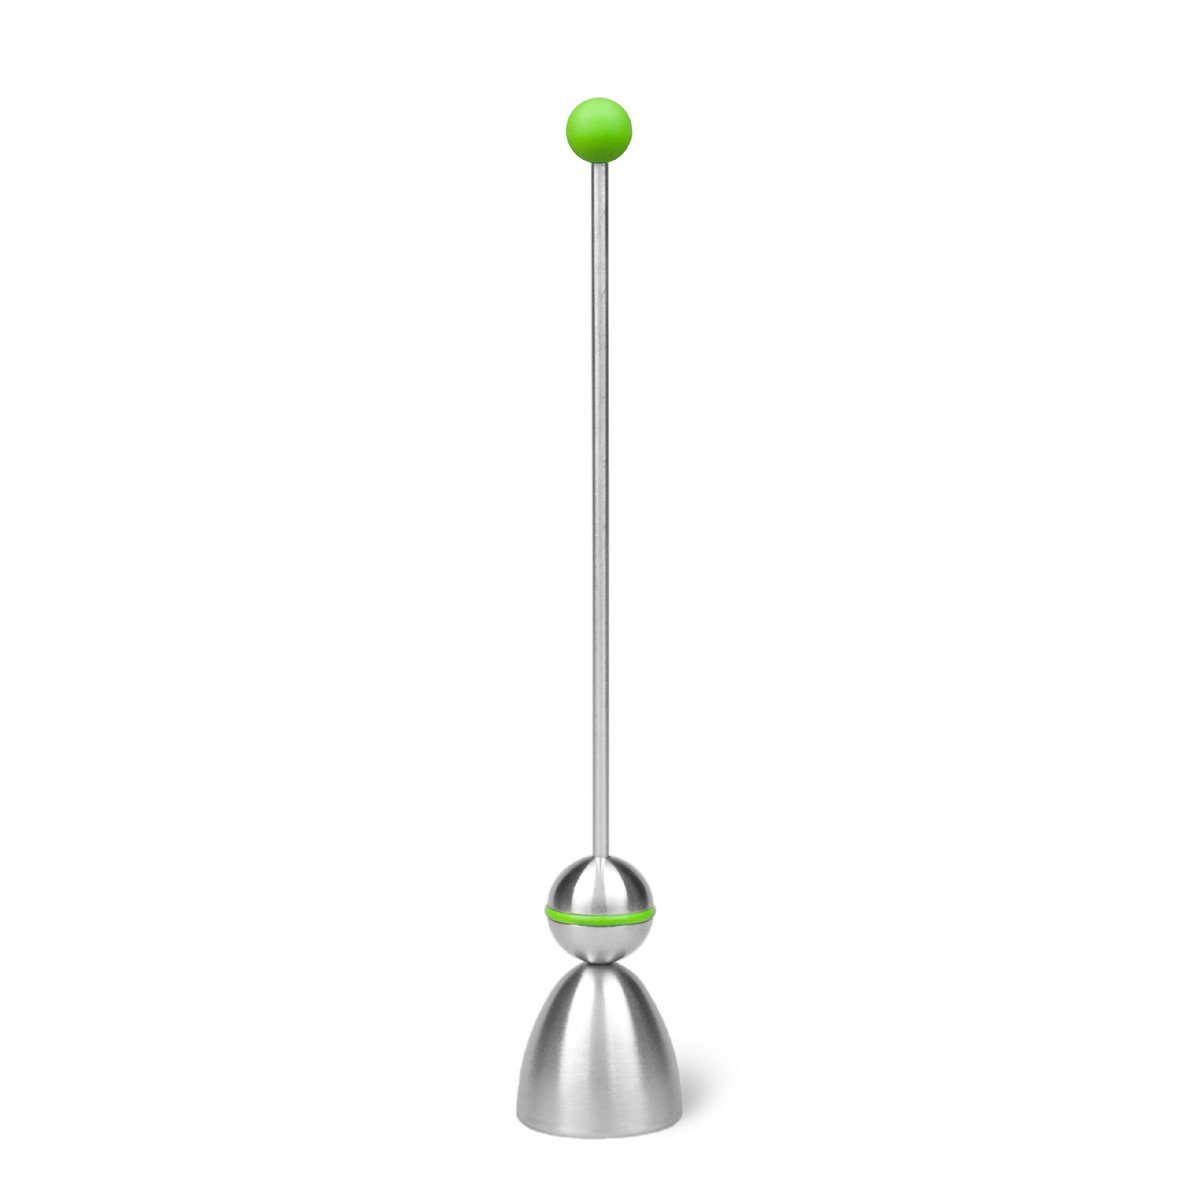 Take2-Design CLACK Eieröffner Eierköpfer Kugel grün